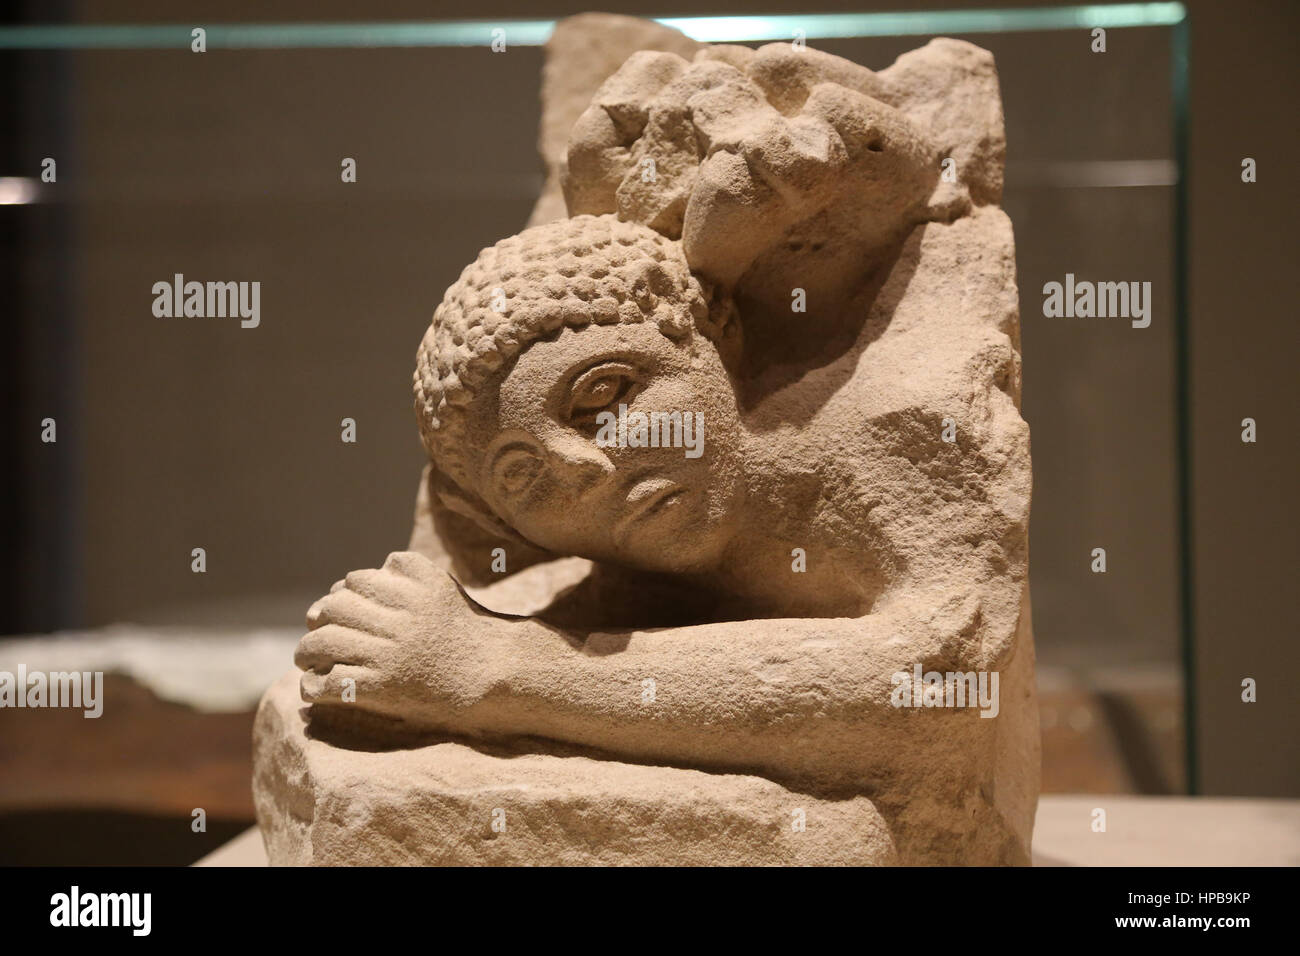 Iberische Quadern. Osuna Gruppe B. Man von einem Löwen angegriffen. Kalkstein. Frühen 1. Jahrhundert V.Chr. Osuna (Sevilla). Spanien. Stockfoto